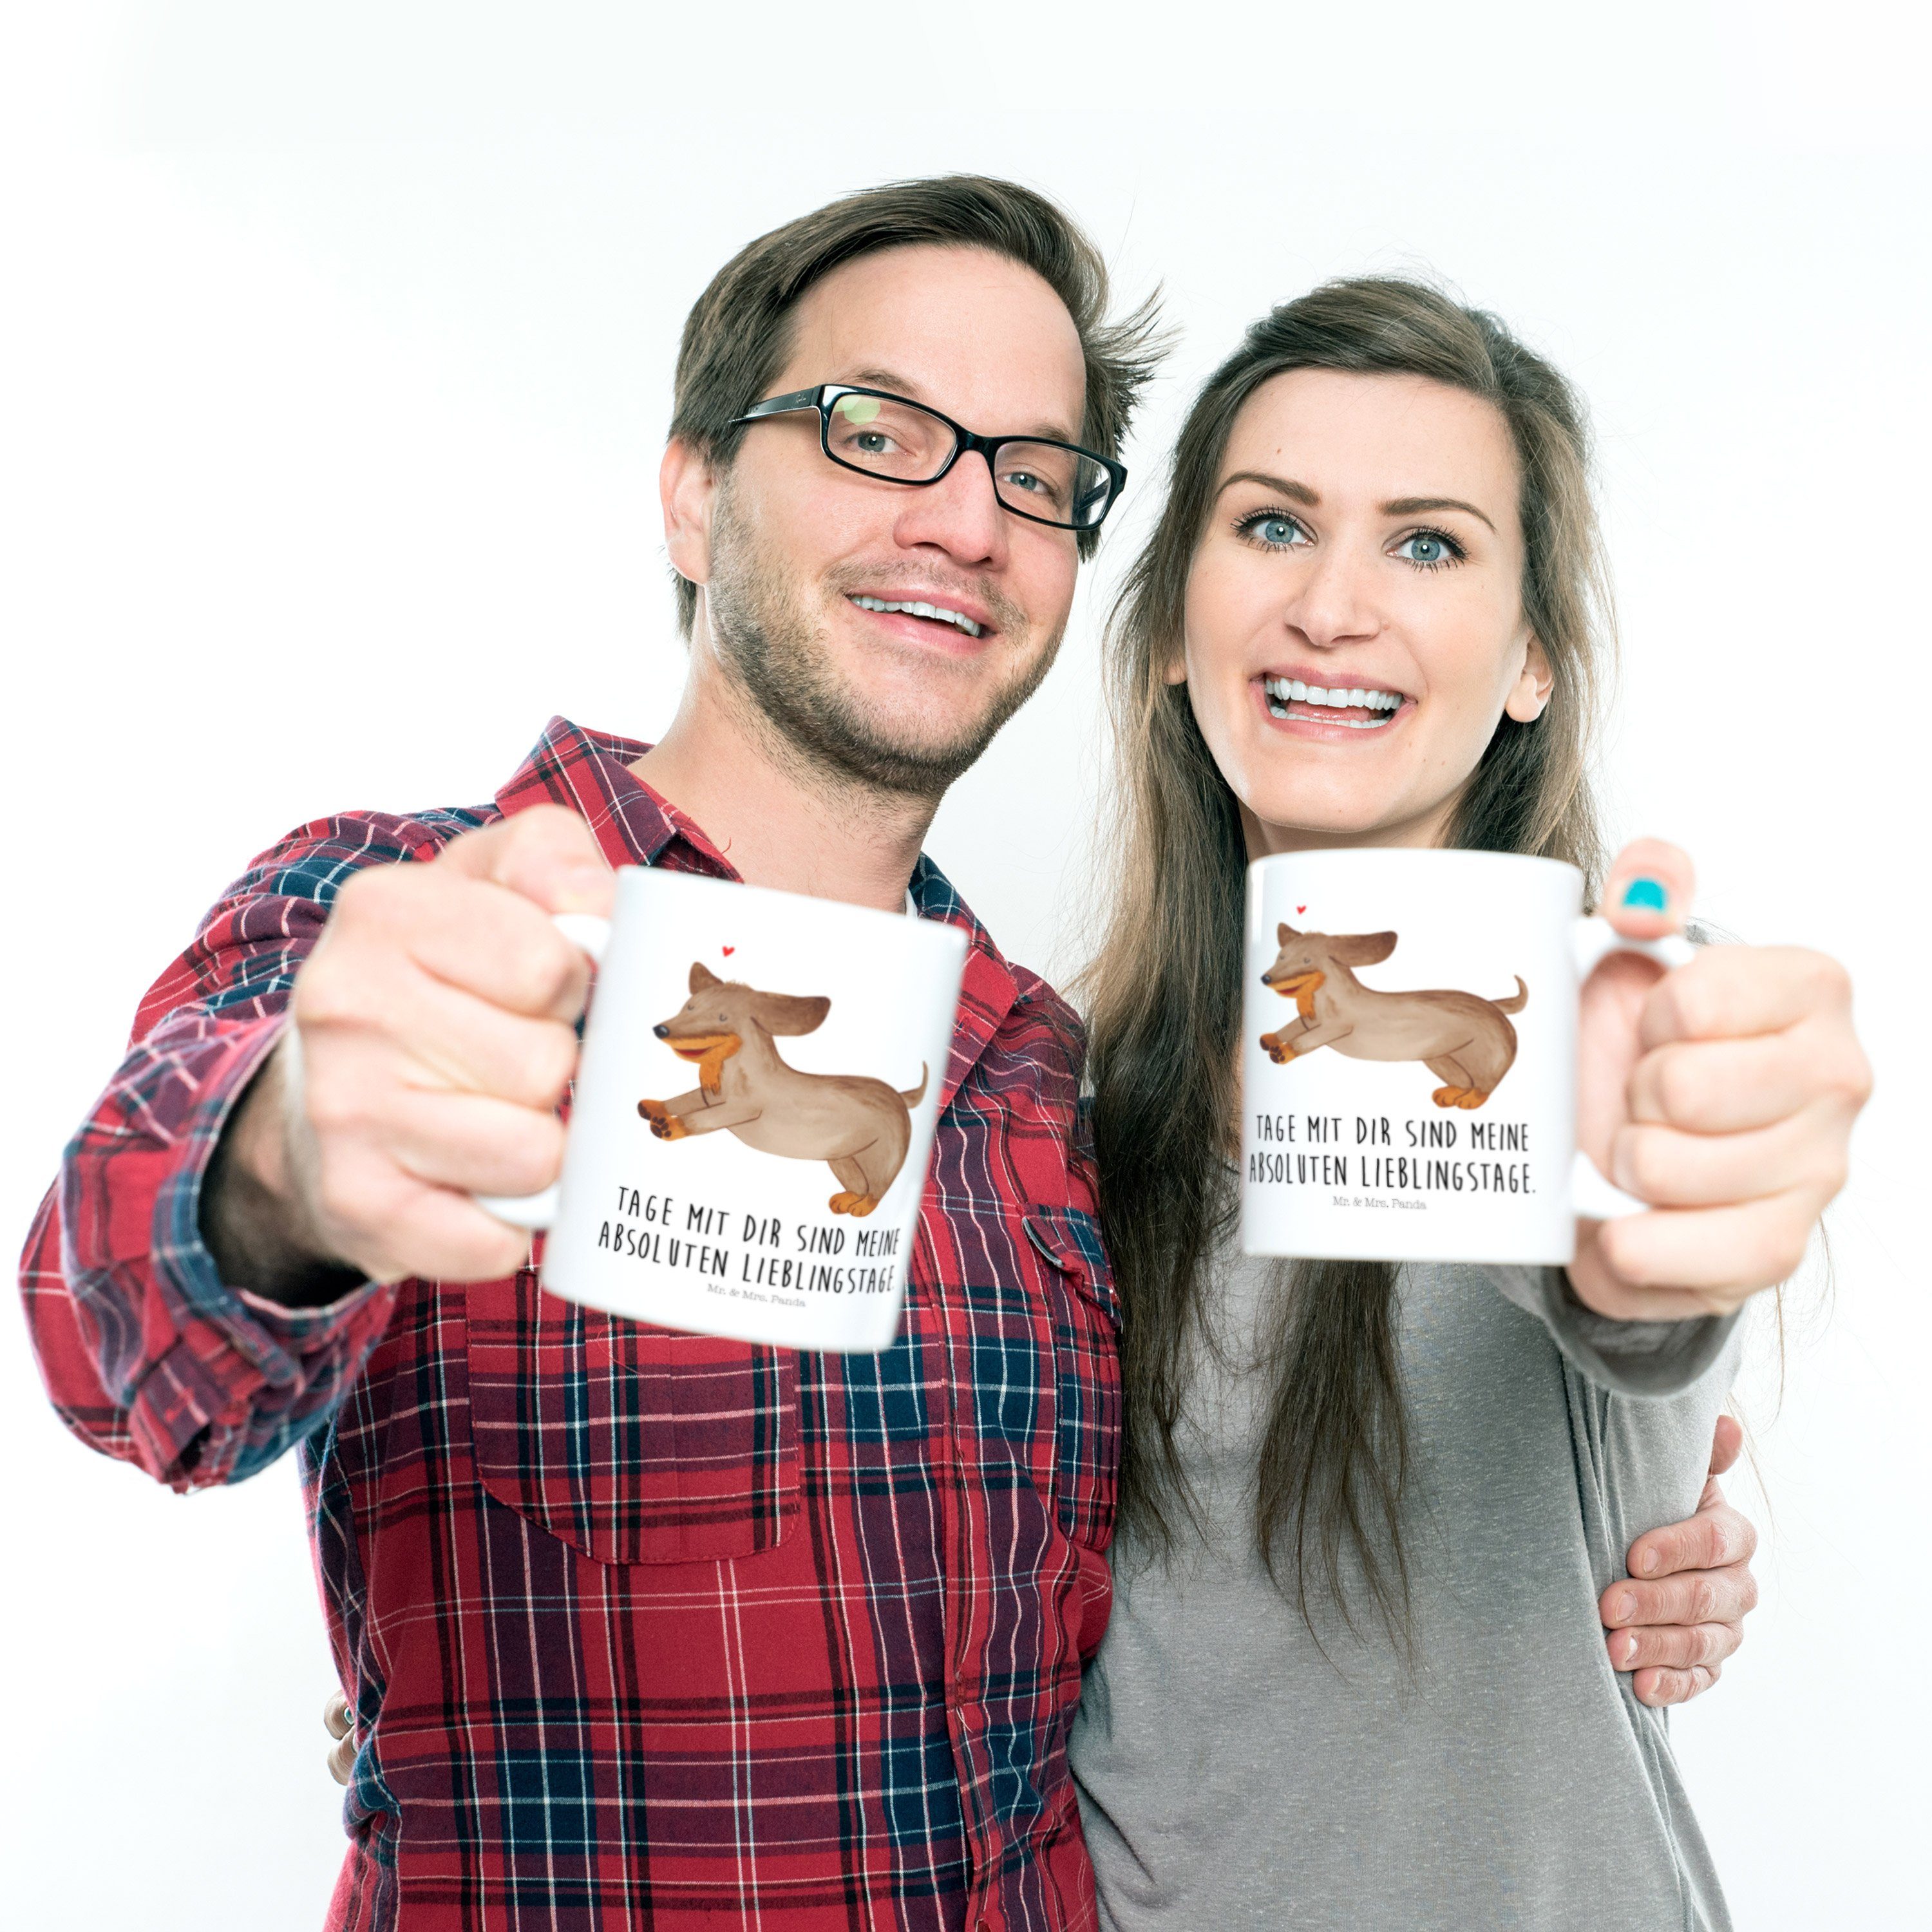 Mr. & Geschenk, braun, dog, Kunststoff Kinderbecher Hund Panda Dackel - fröhlich happy Weiß - Mrs. Kaffeetasse